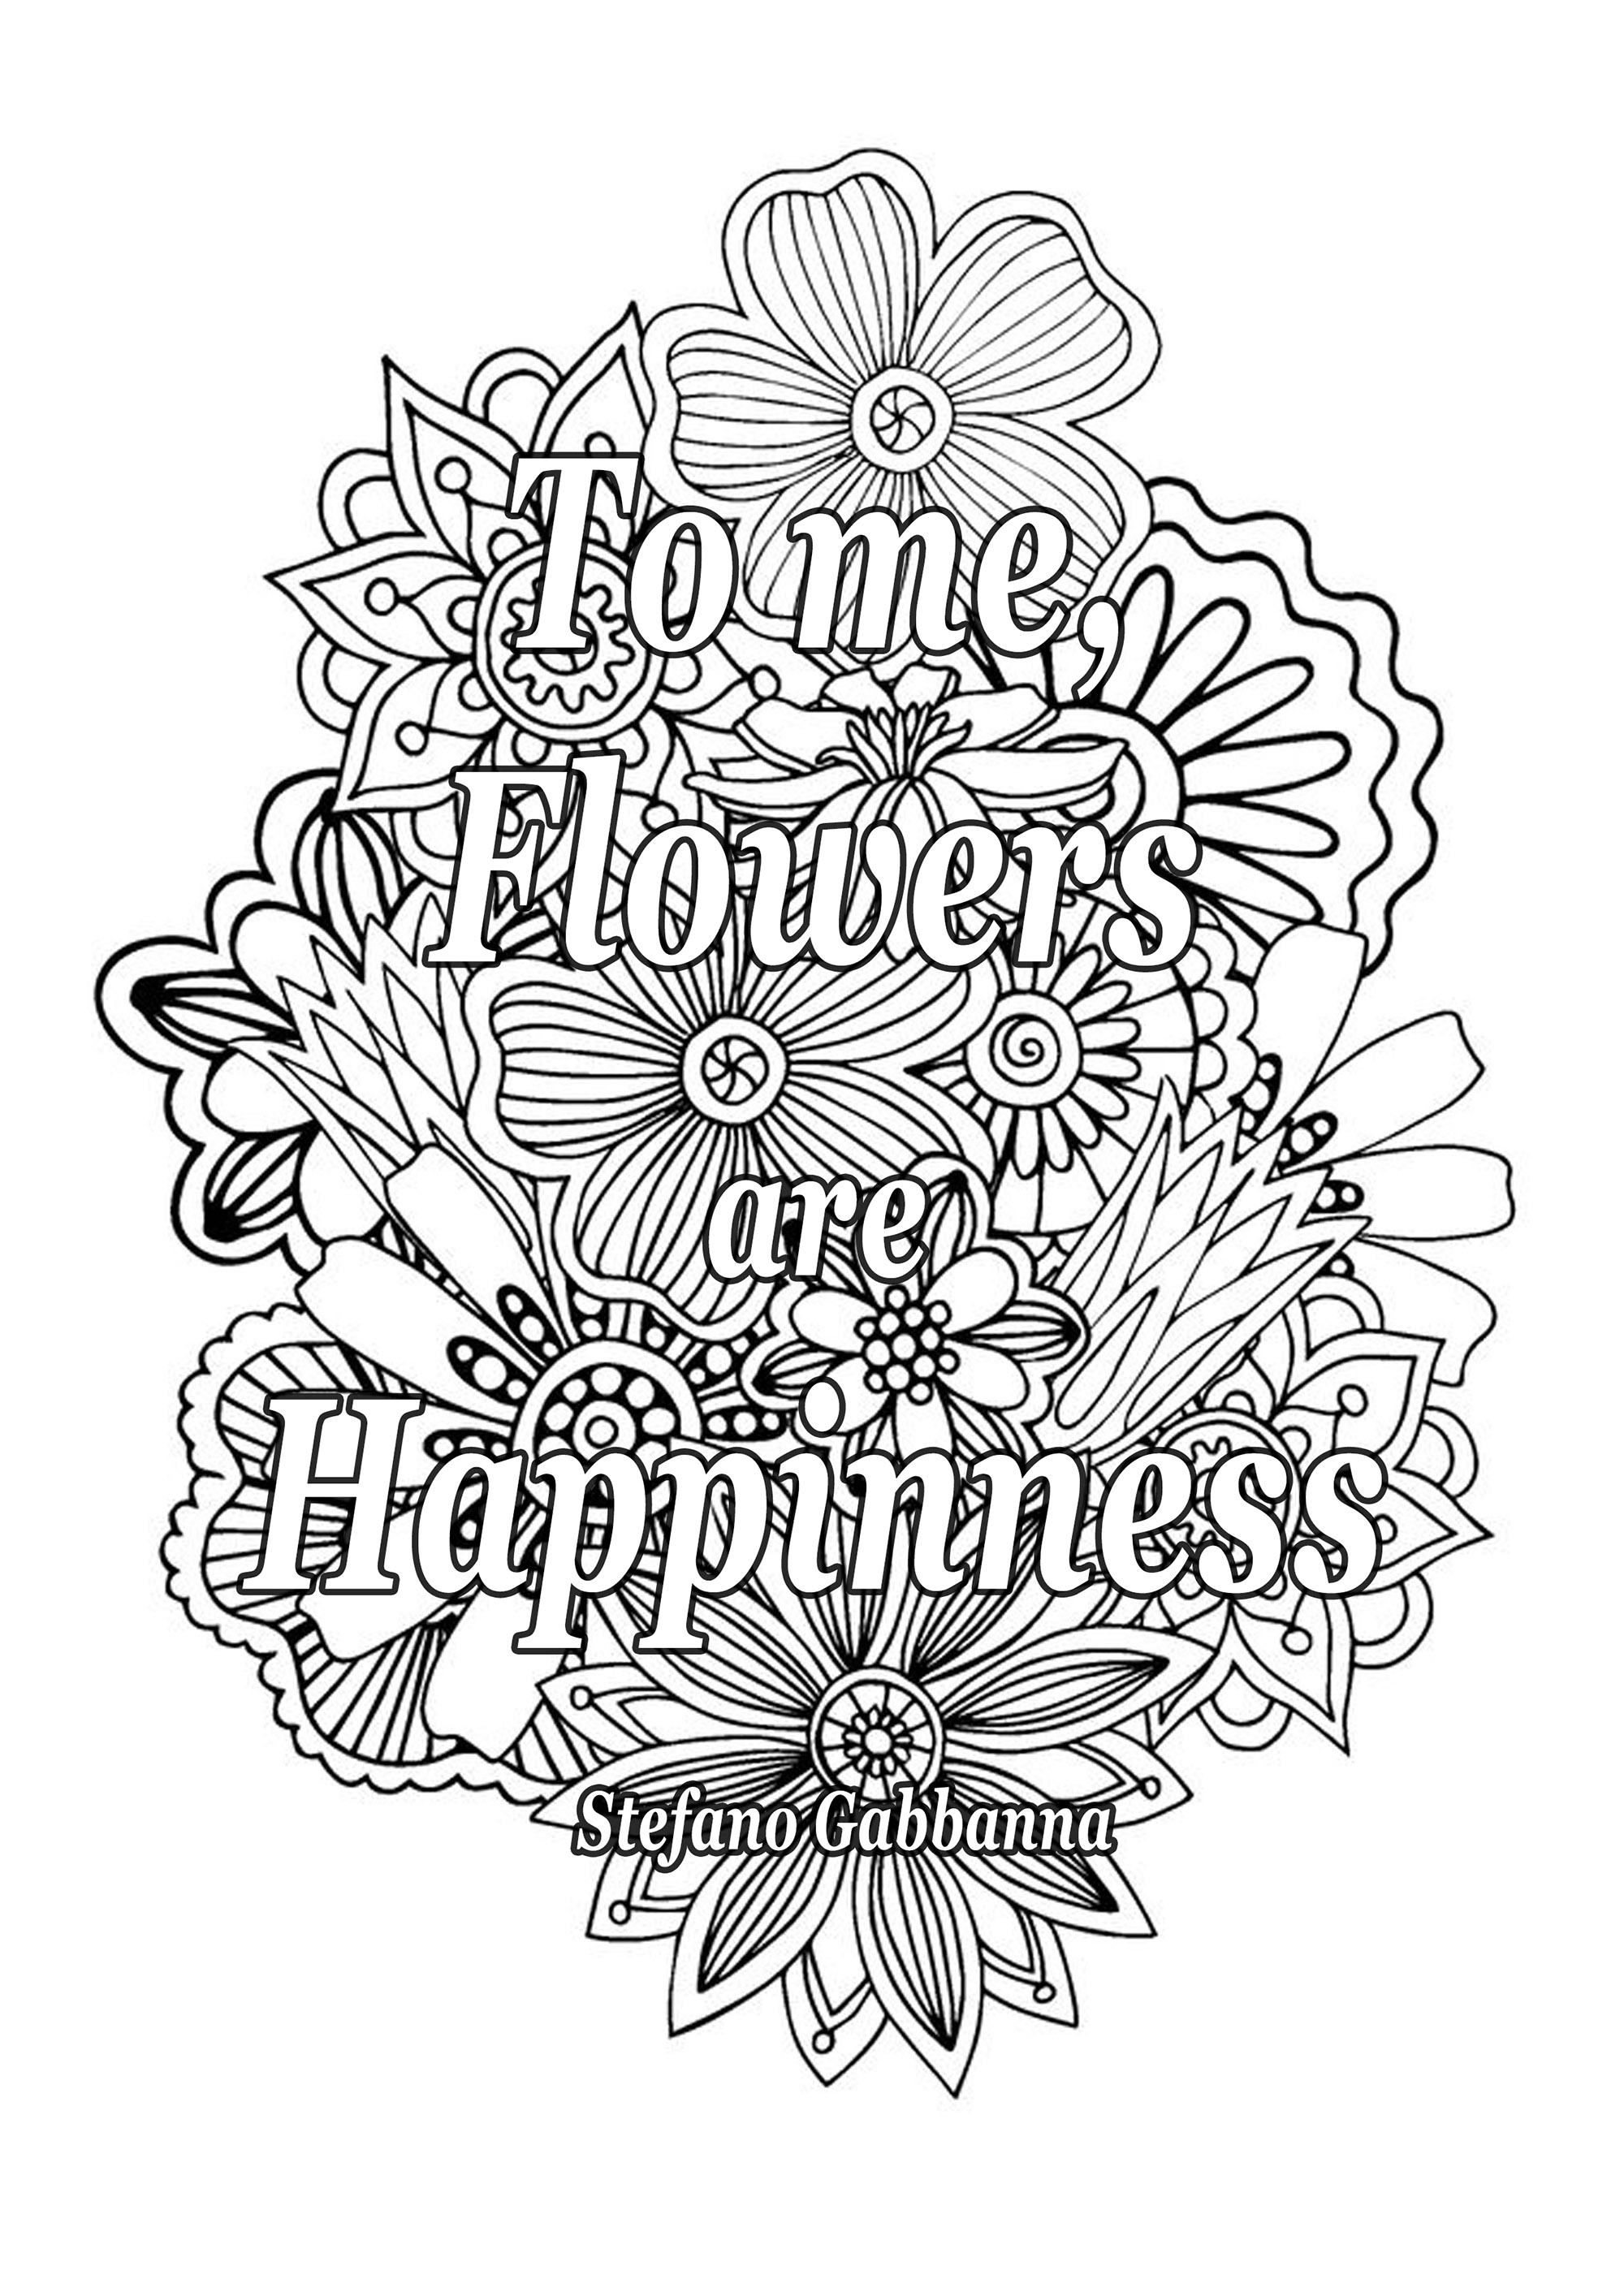 Para mim, as flores são a felicidade. Citação de Stefano Gabbanna